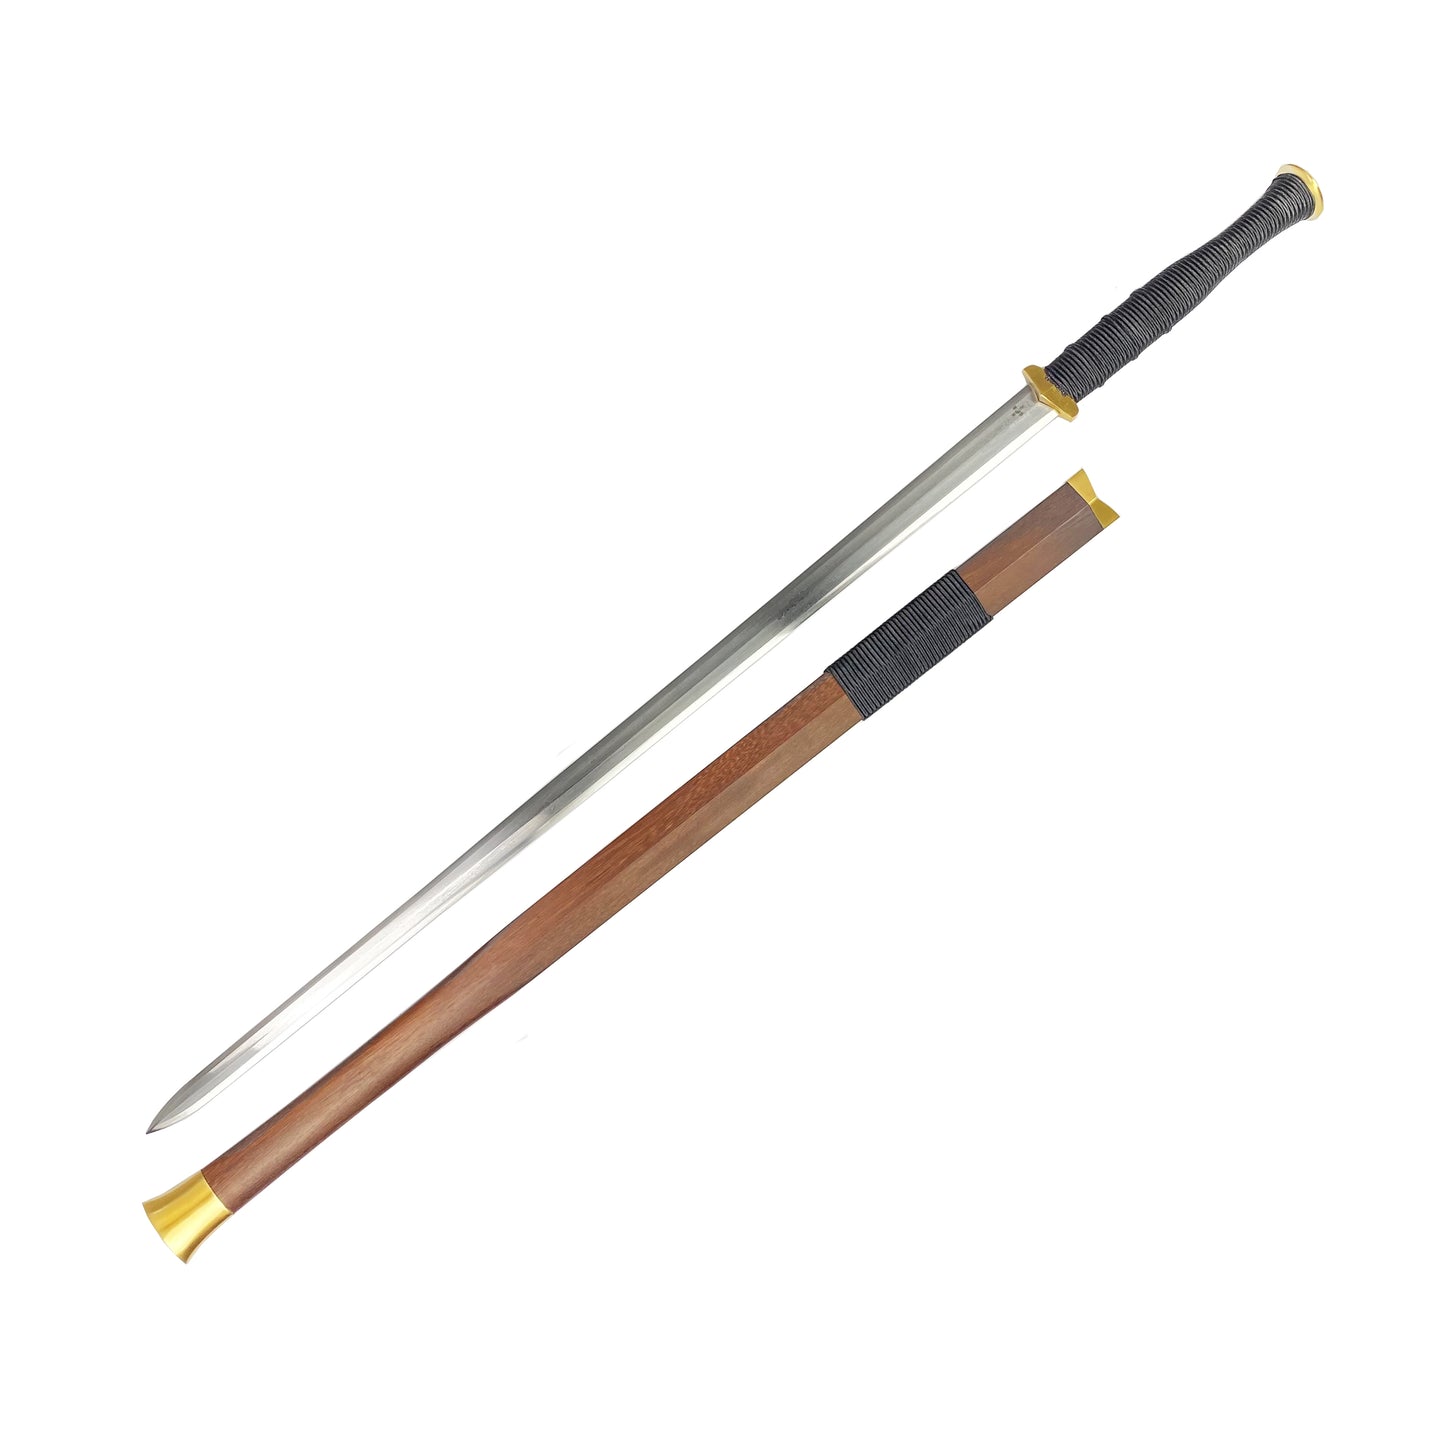 42" Chinese Hand Sword